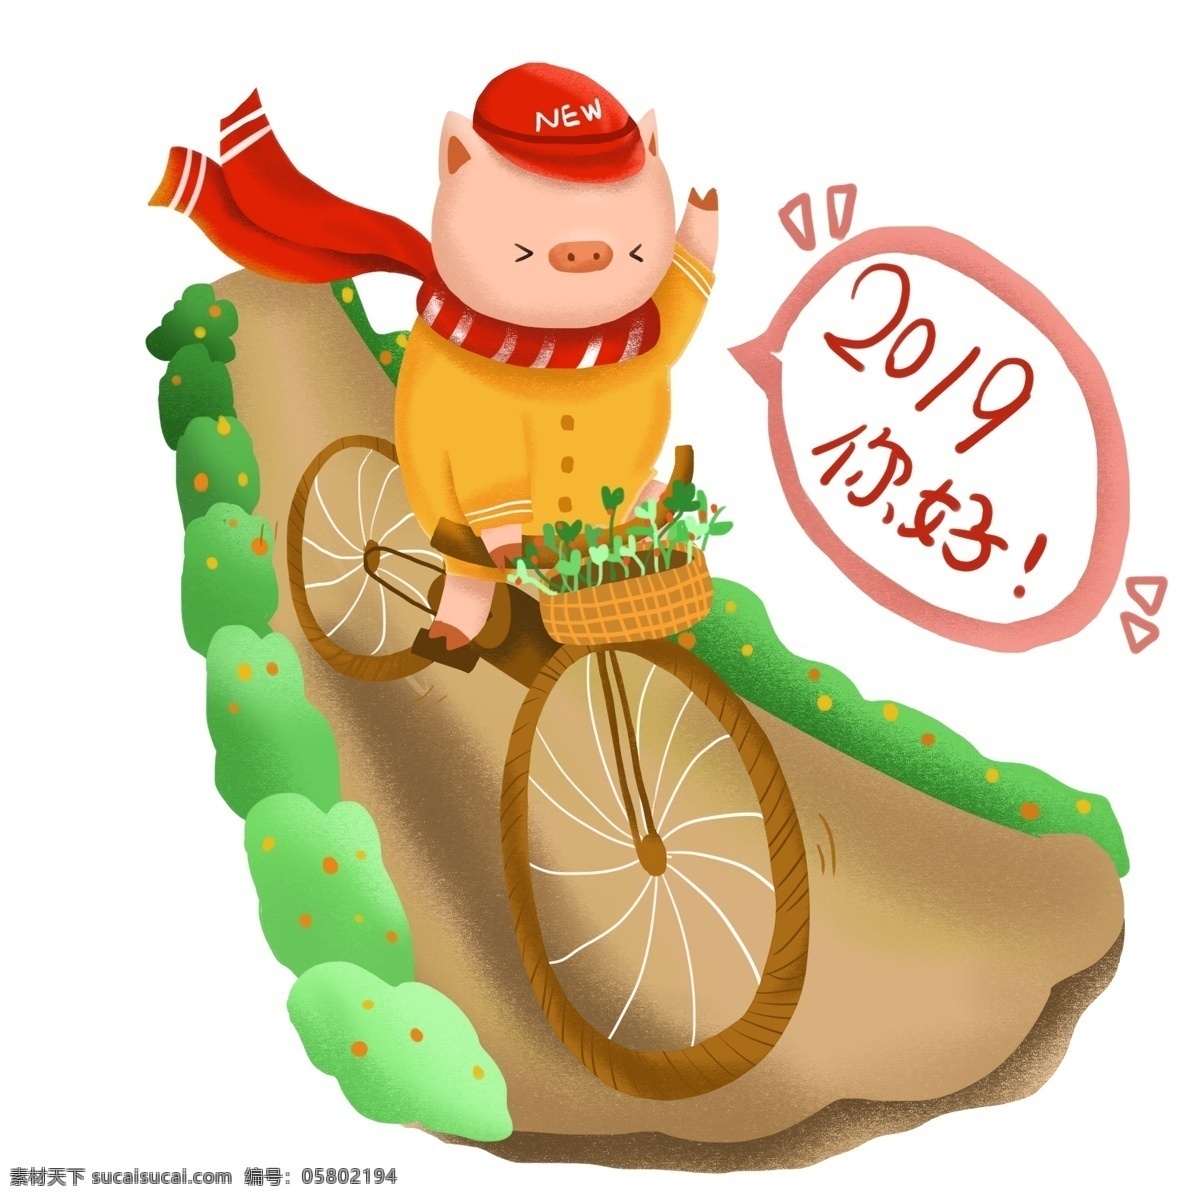 2019 你好 猪 骑 自行车 到来 招手 插画 卡通 可爱 骑自行车 你好2019 打招呼 猪年 新年